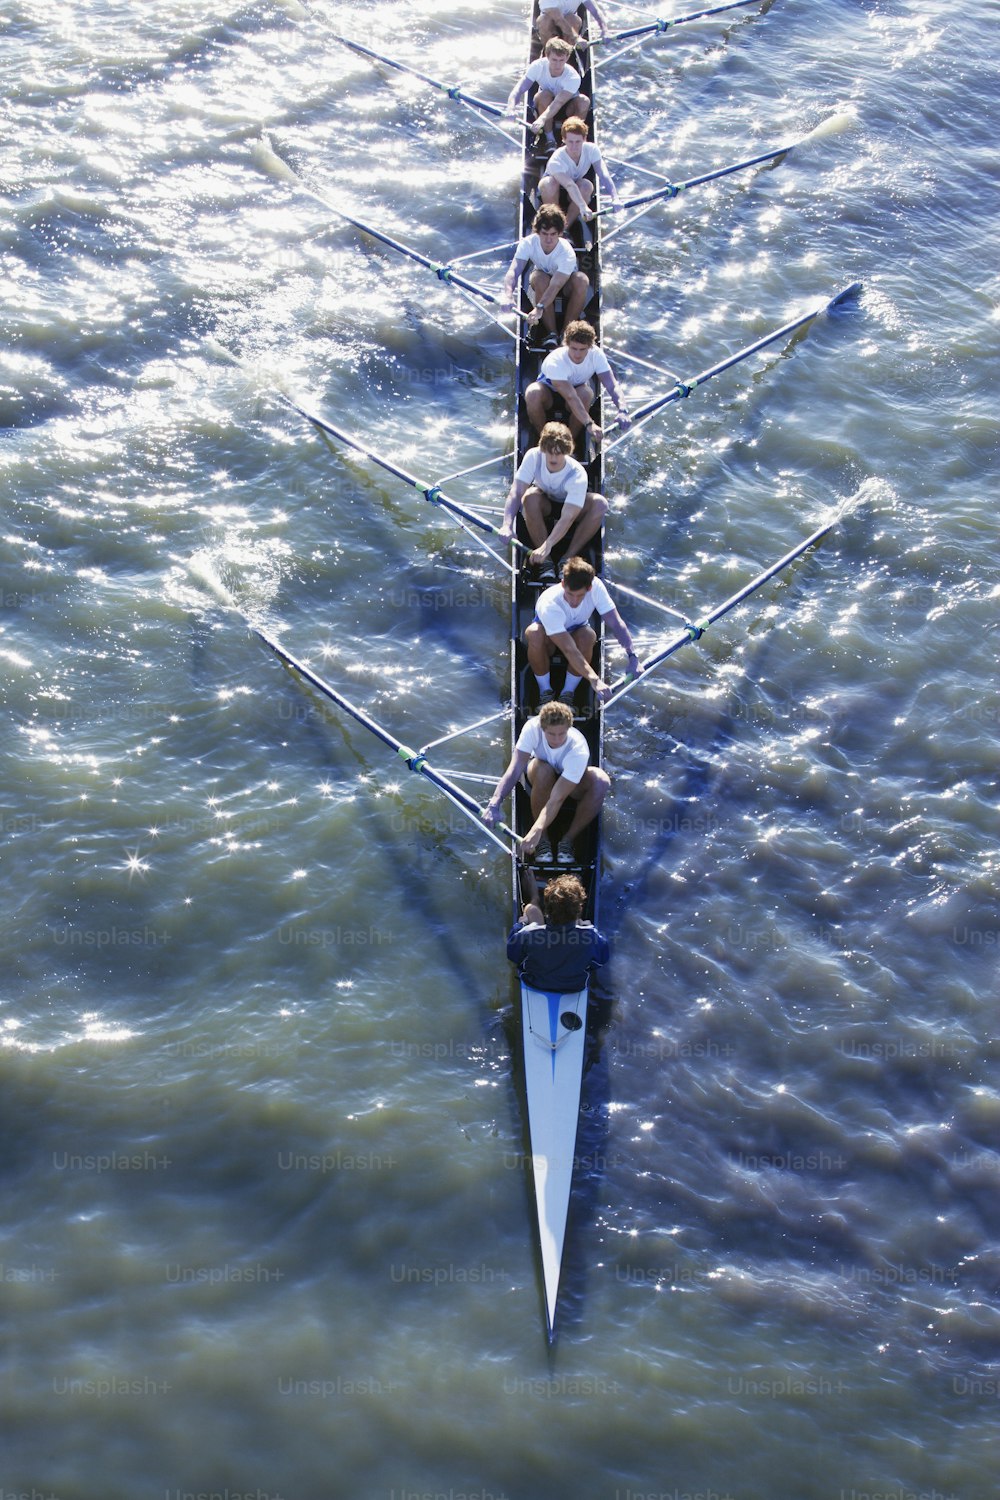 Un grupo de personas remando un bote largo en el agua